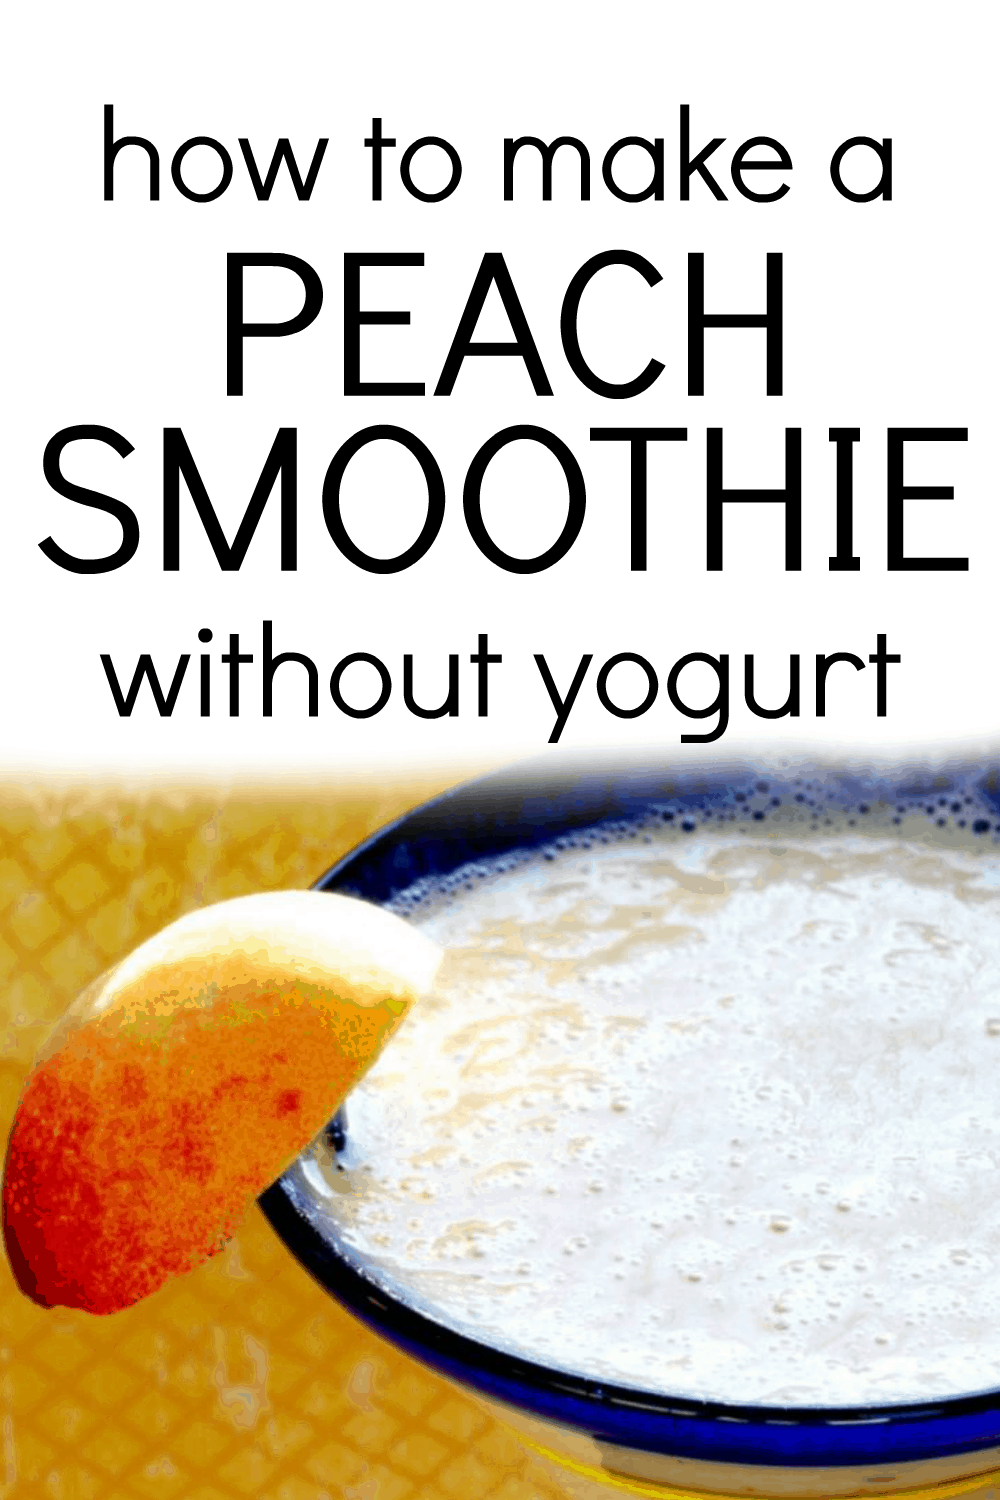 PEACH SMOOTHIE RECIPES NO YOGURT - text over image of a dairy-free peach smoothie